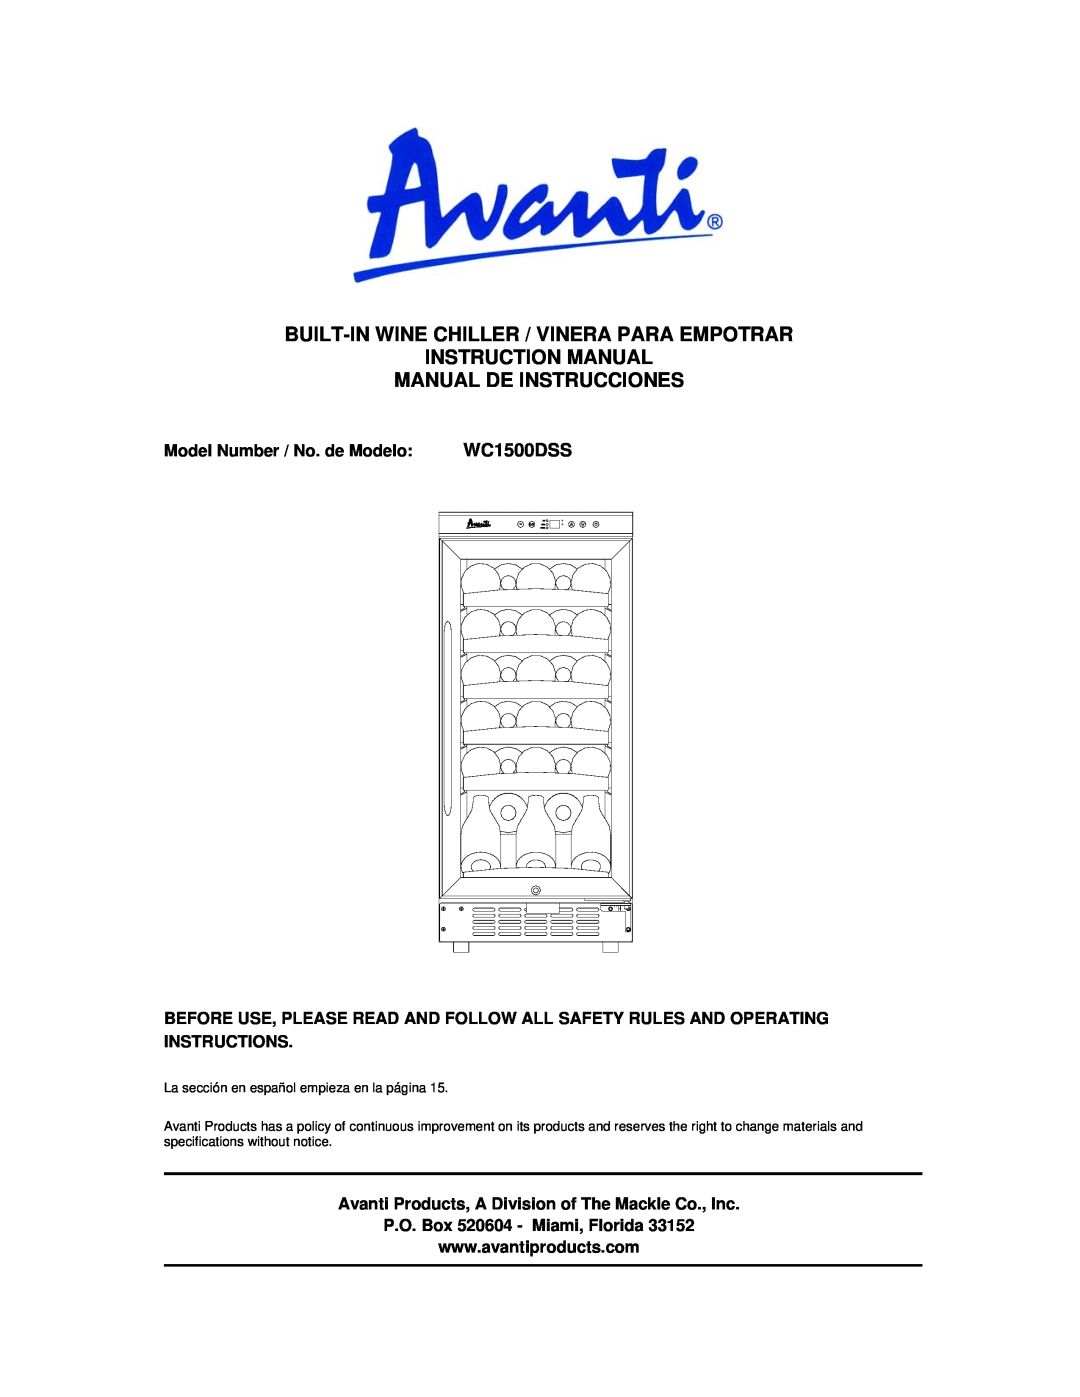 Avanti WC1500DSS instruction manual Manual De Instrucciones, Model Number / No. de Modelo 